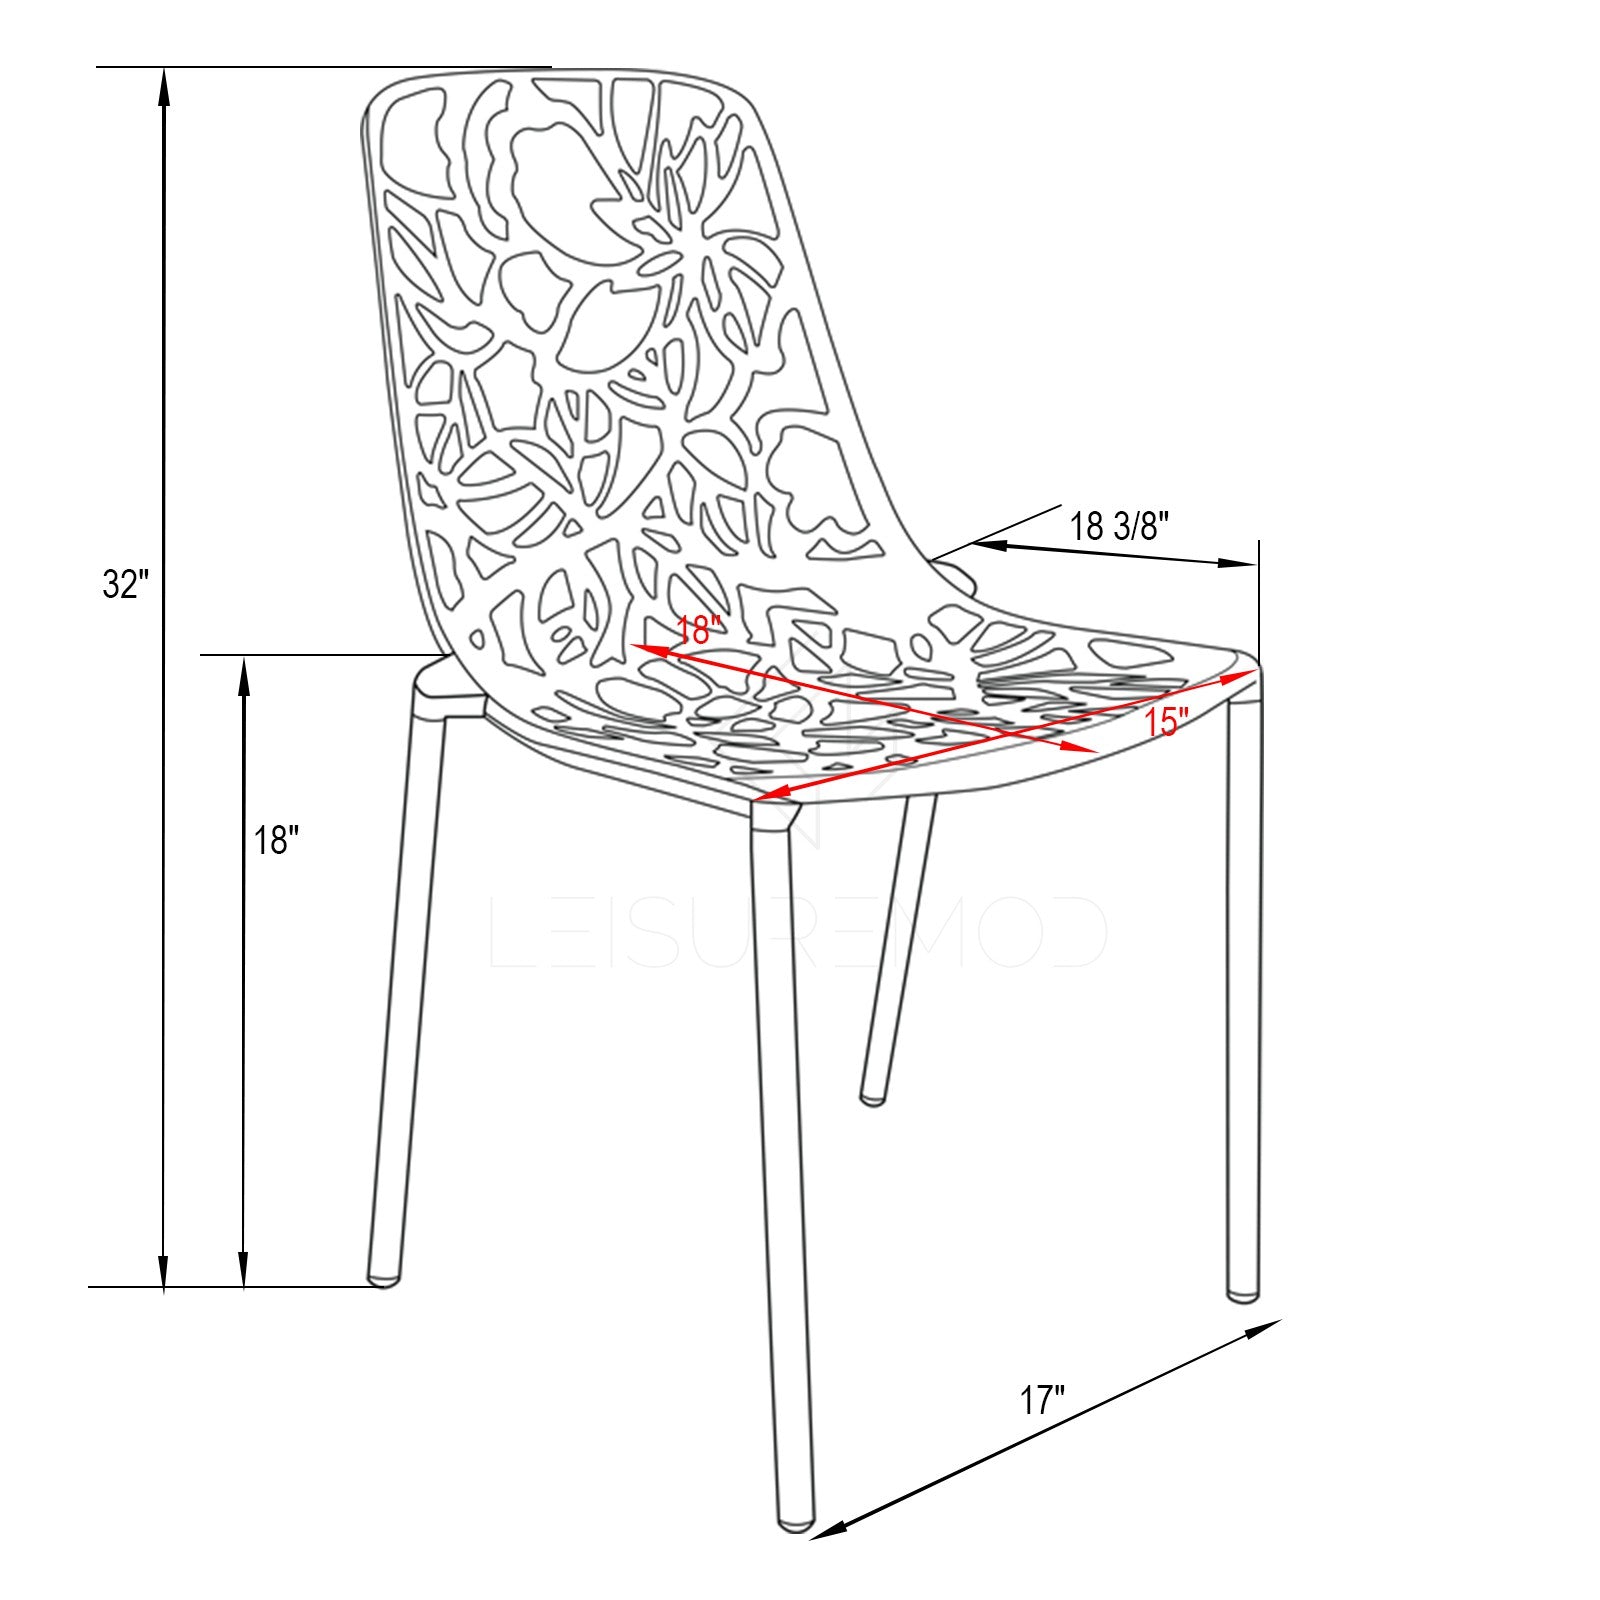 Desire Black Aluminum Side Chair - living-essentials